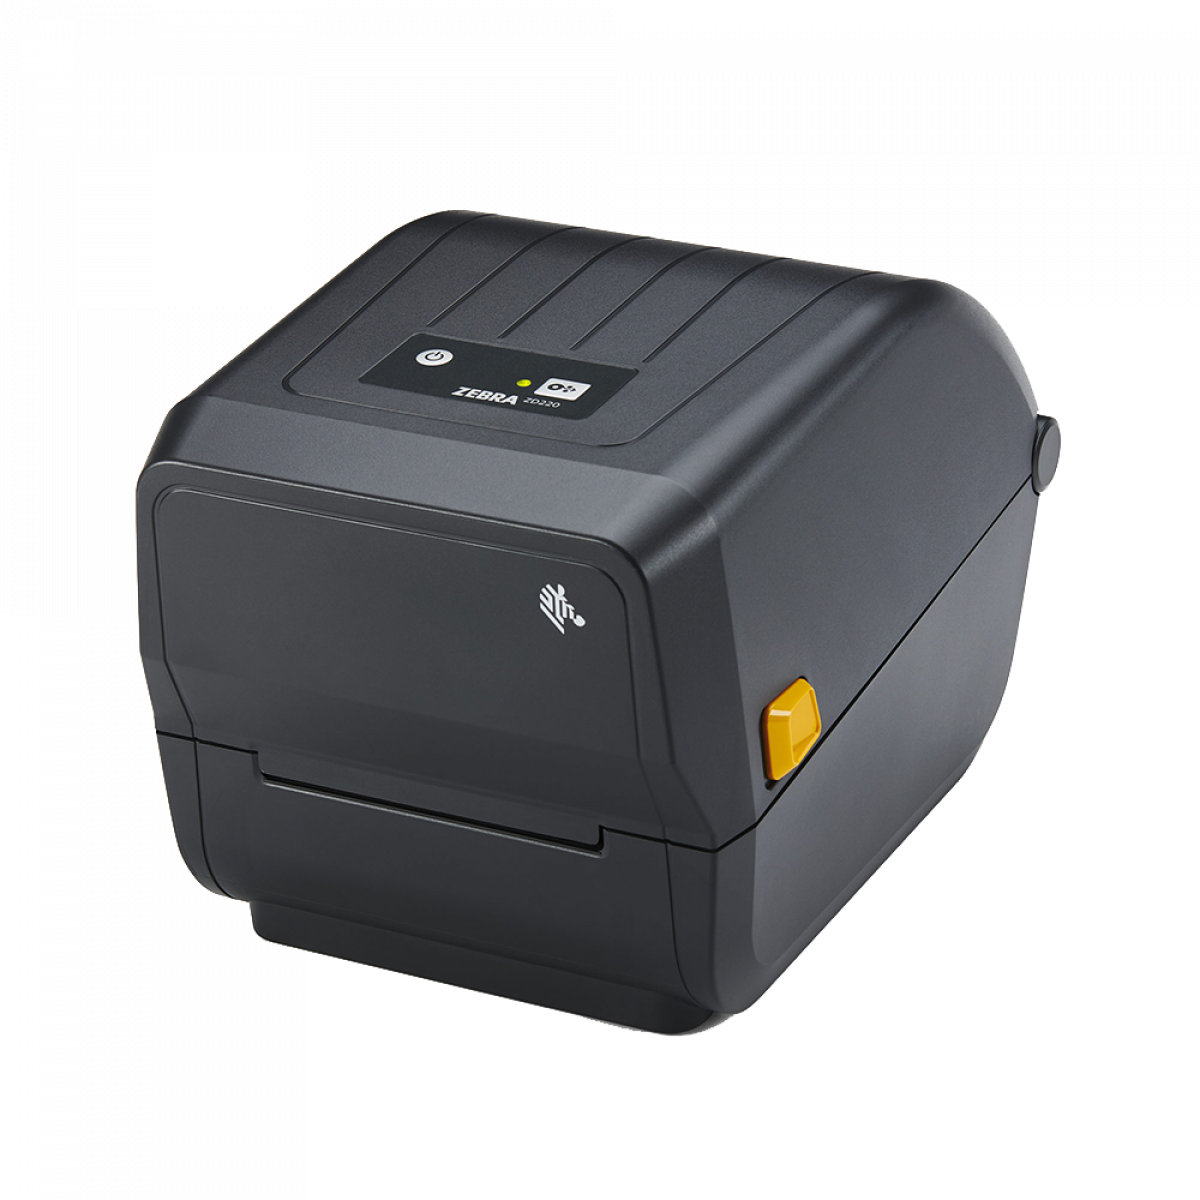 Zebra ZD220 4 inch desktop printer